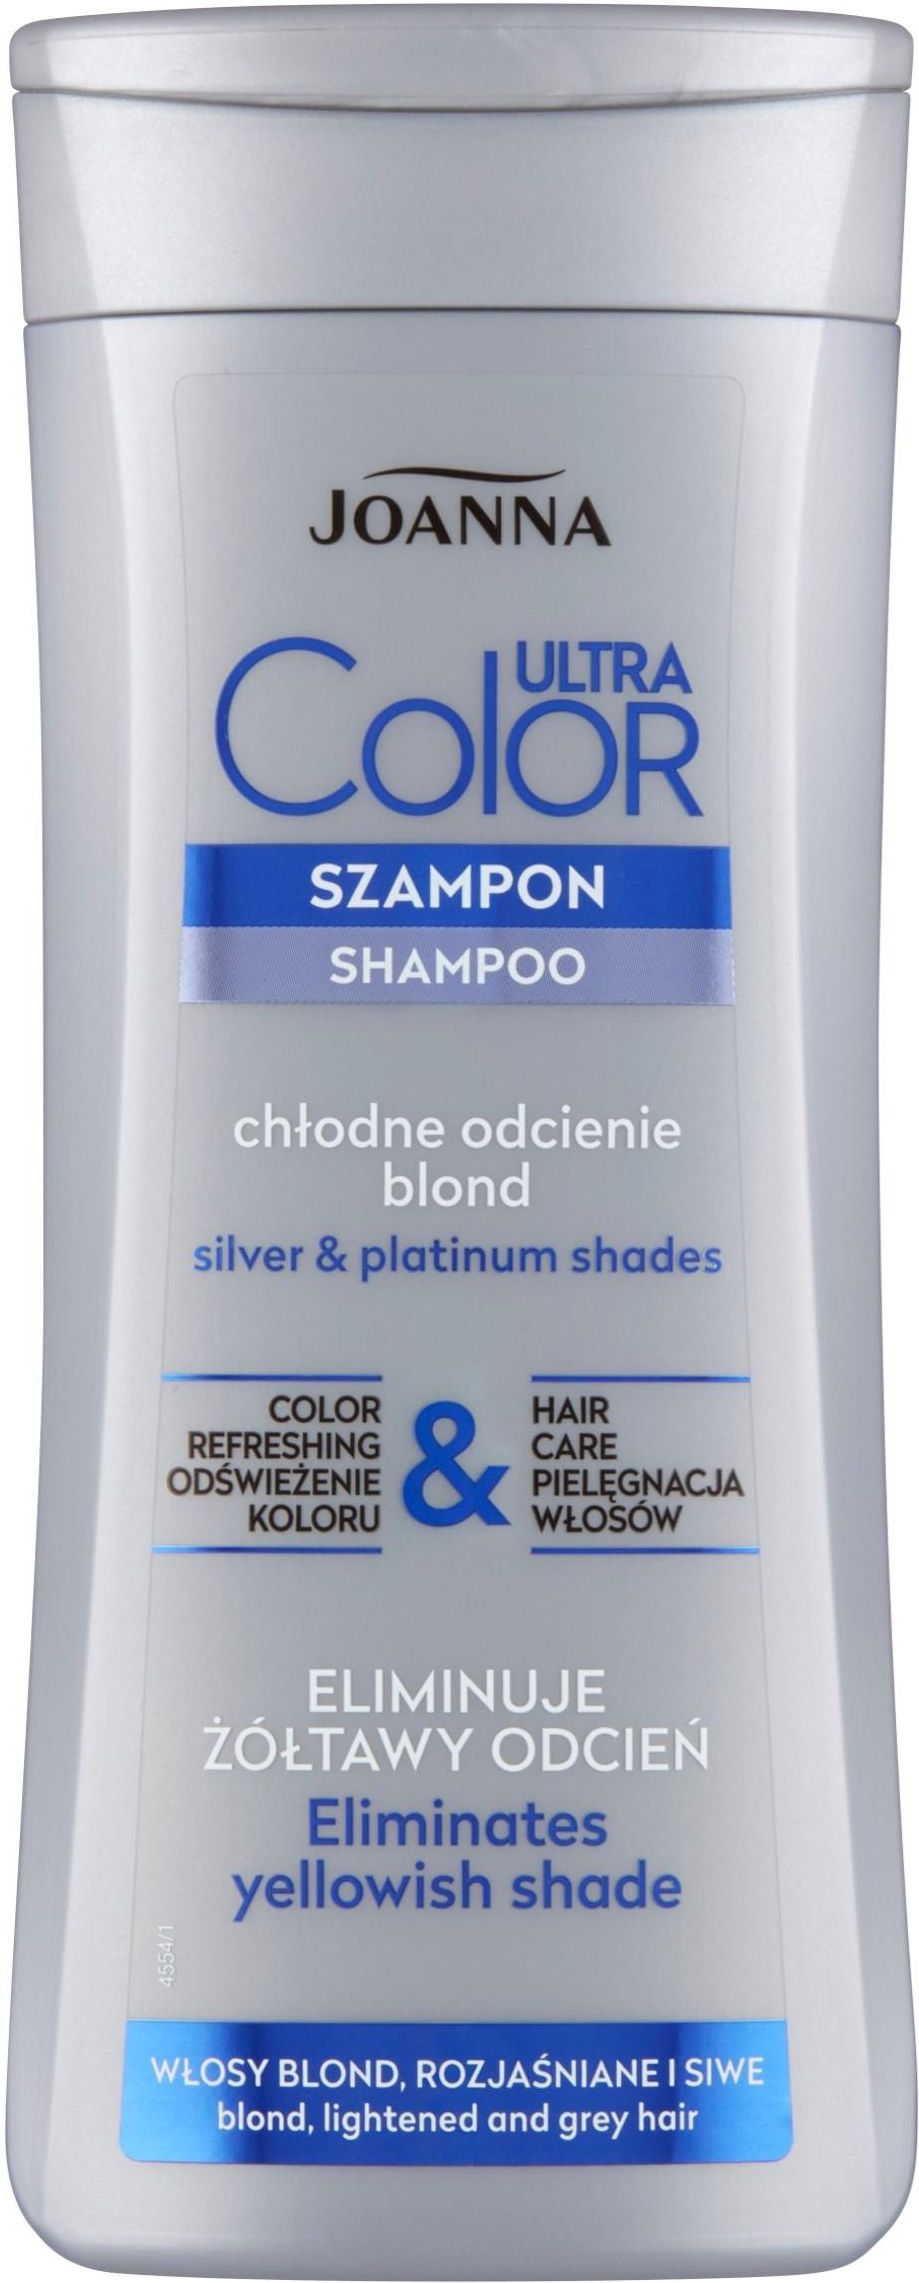 szampon joanna ultra color system czy rozjąsni włosy